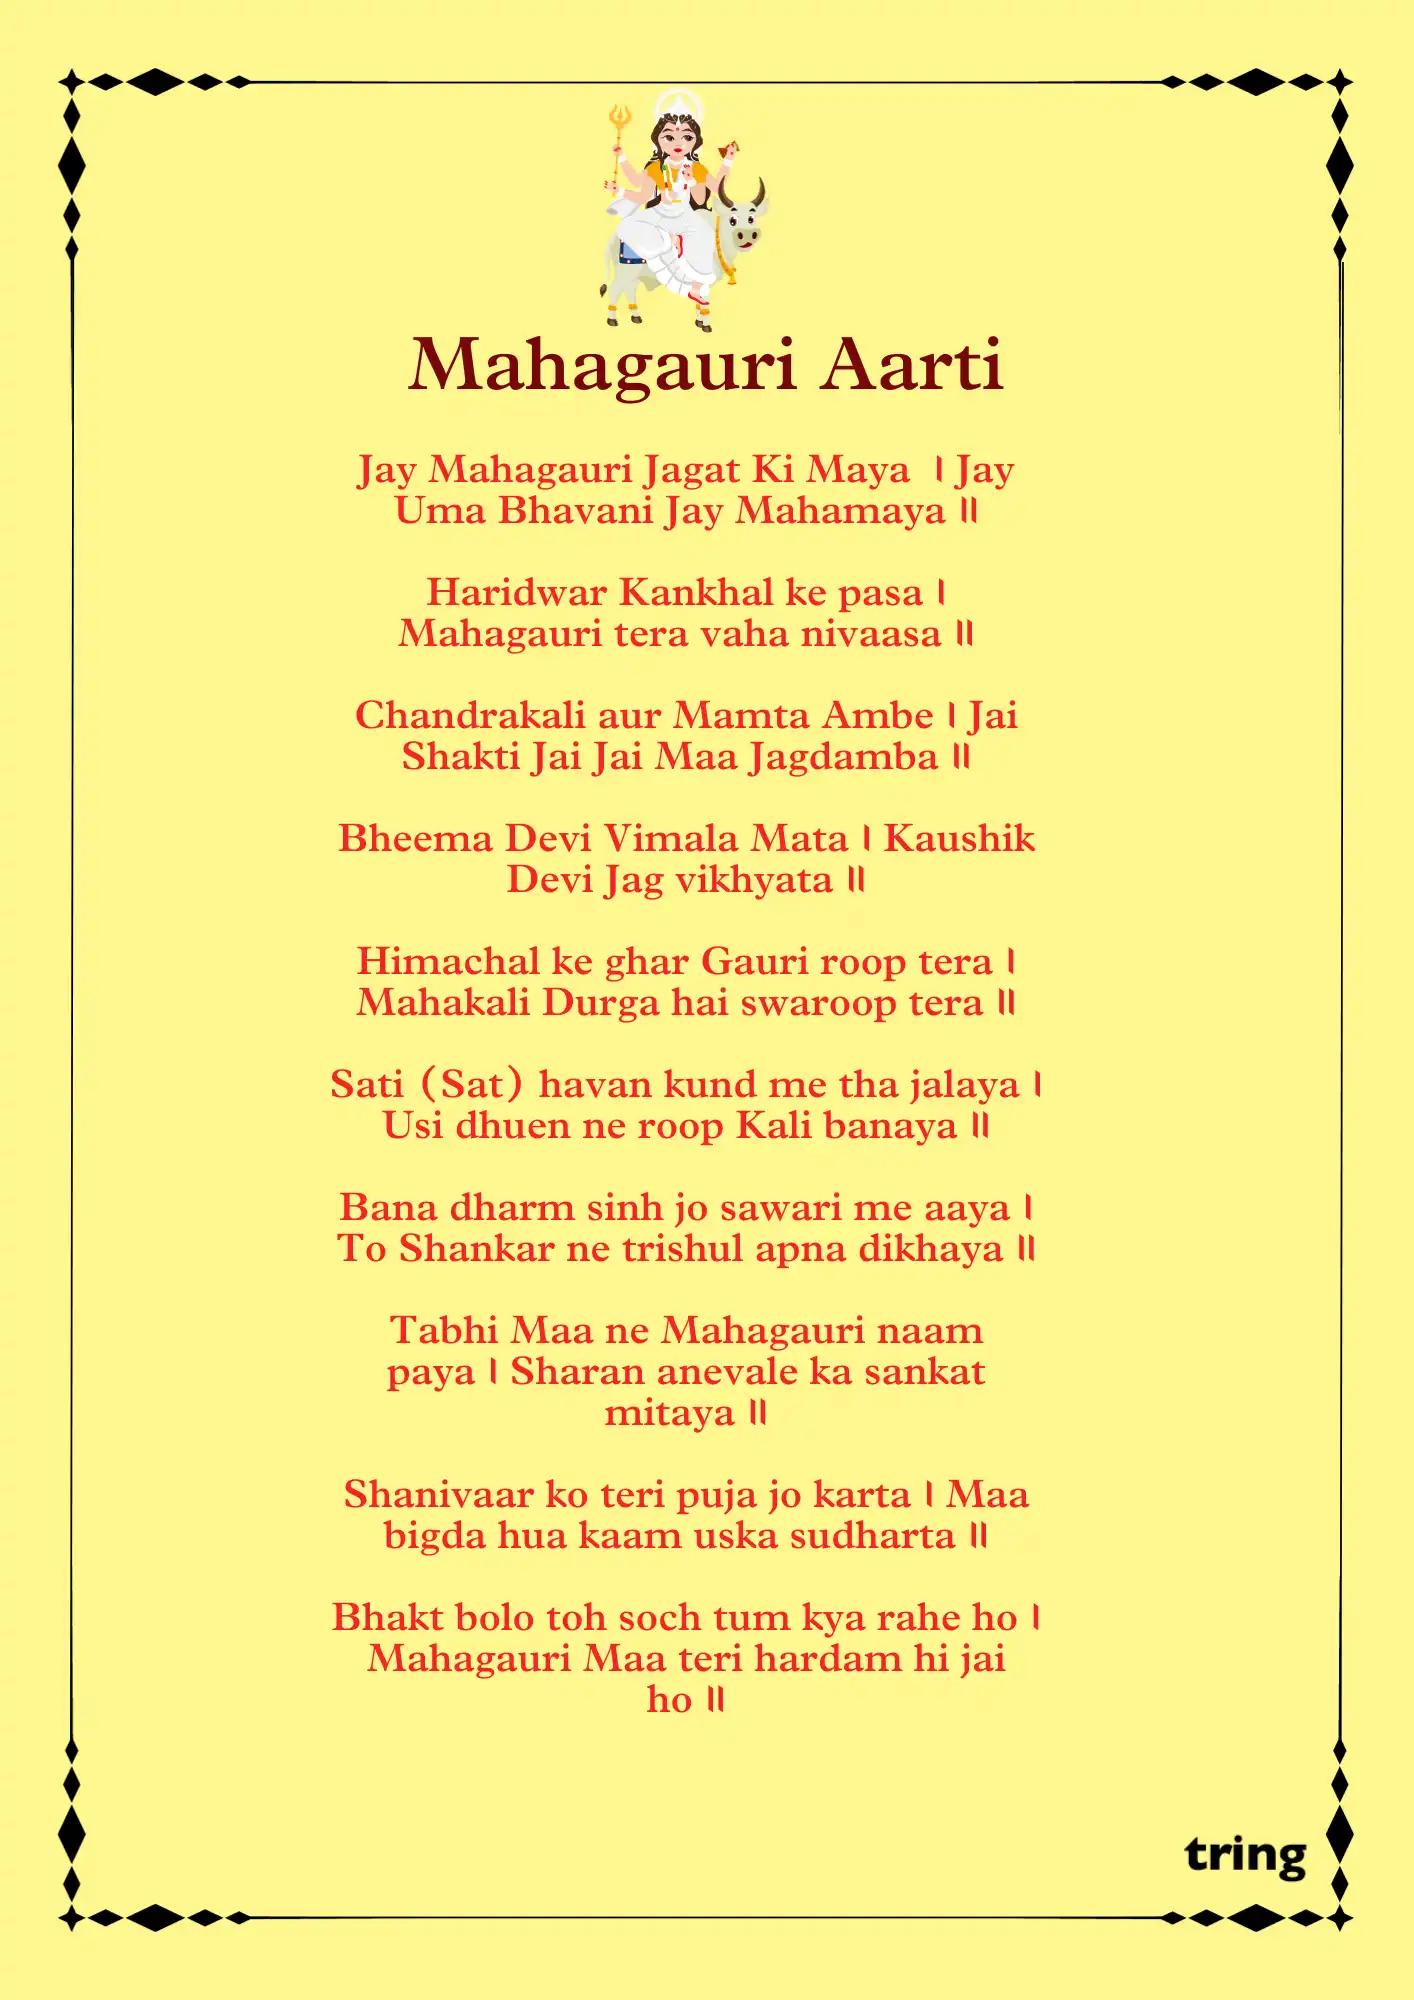 Mahagauri Mata ki Aarti माता महागौरी की आरती